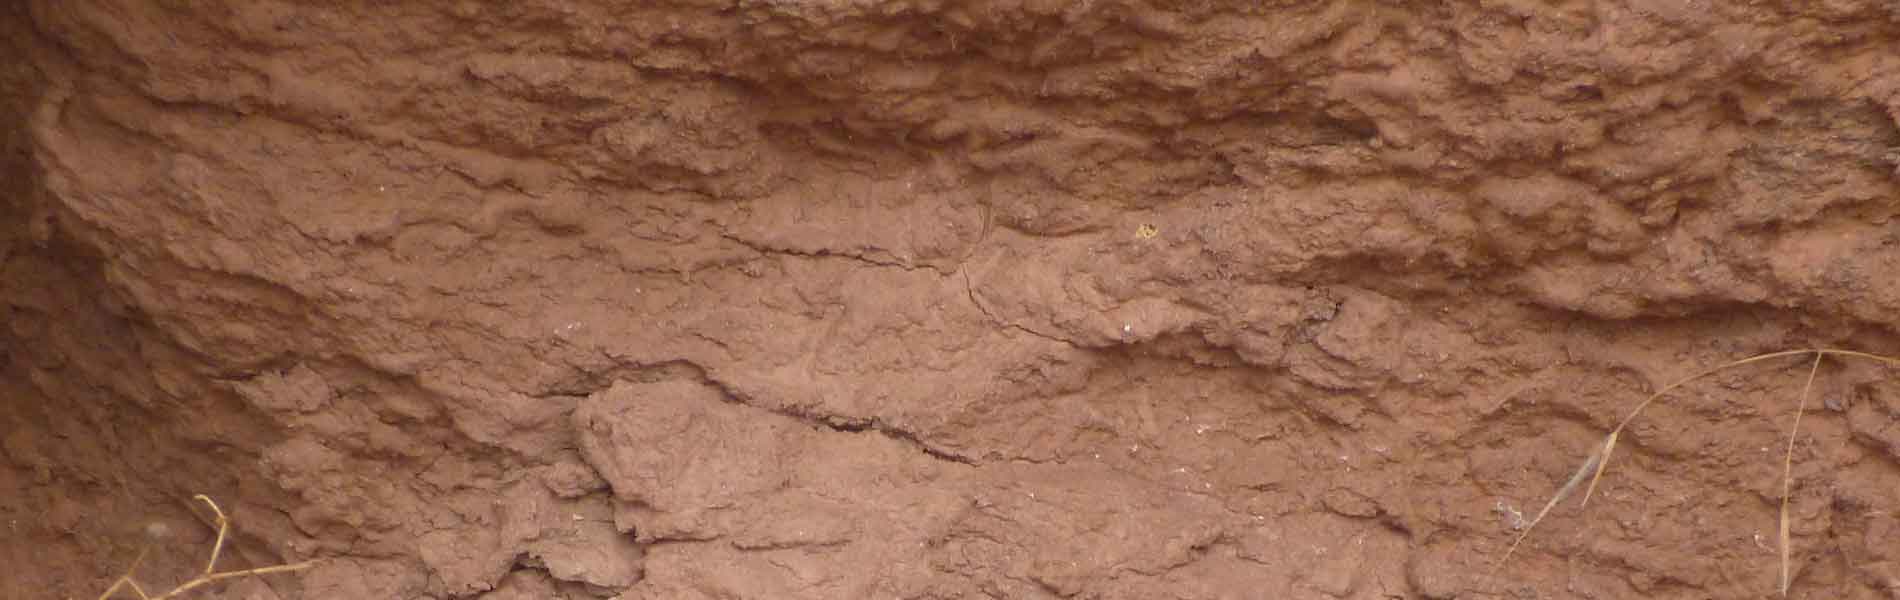 Roter Sandsteinboden